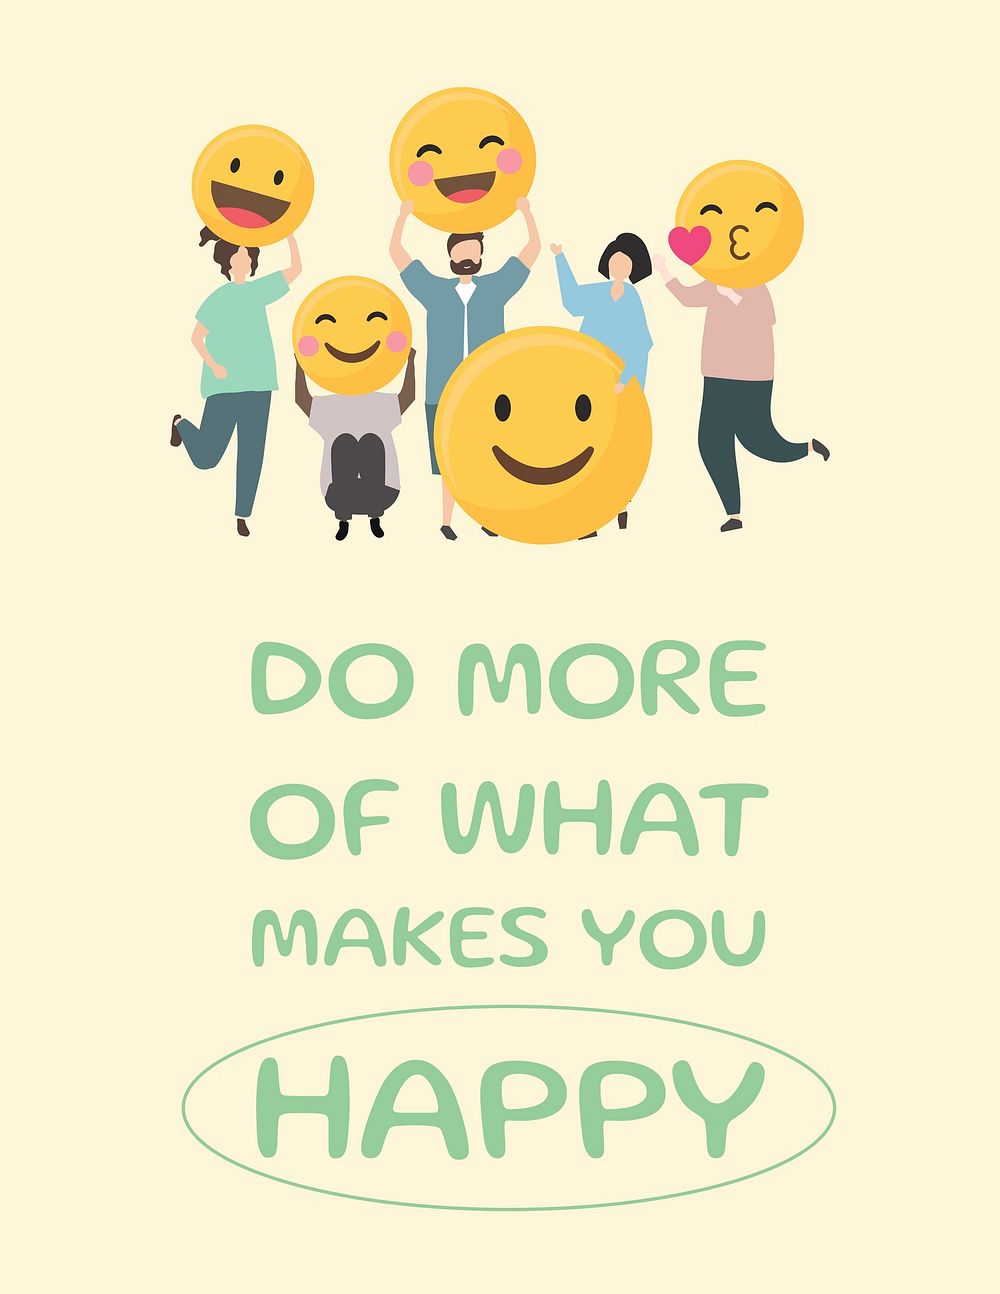 Happy emoji flyer template, editable design vector